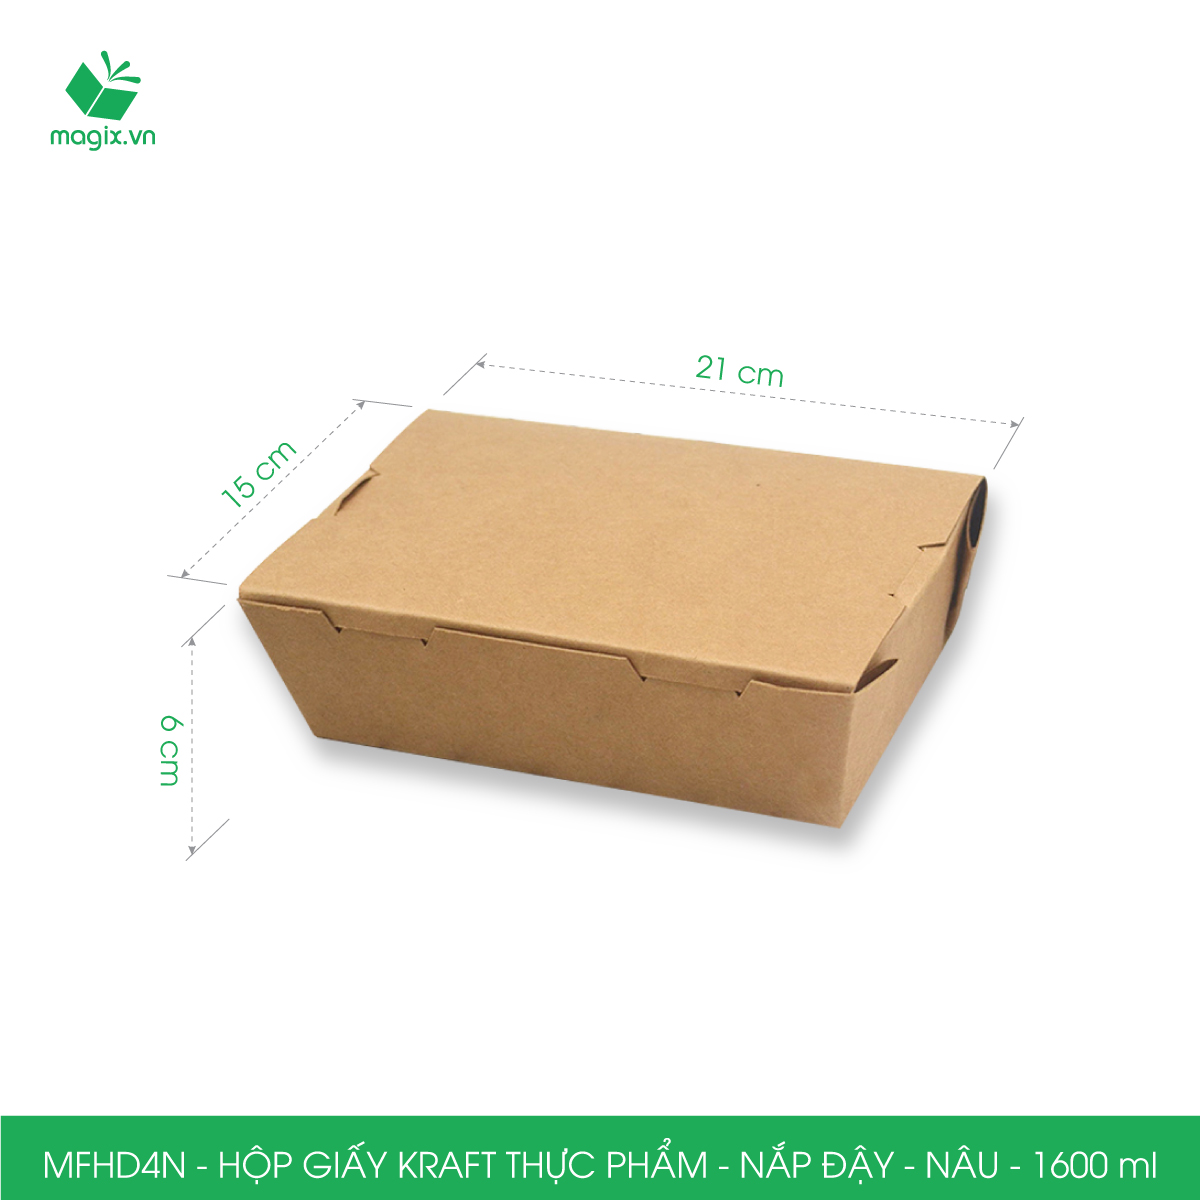 MFHD4N - Combo 100 hộp giấy kraft thực phẩm 1600ml, hộp đựng thức ăn nắp đậy màu nâu, hộp gói đồ ăn mang đi